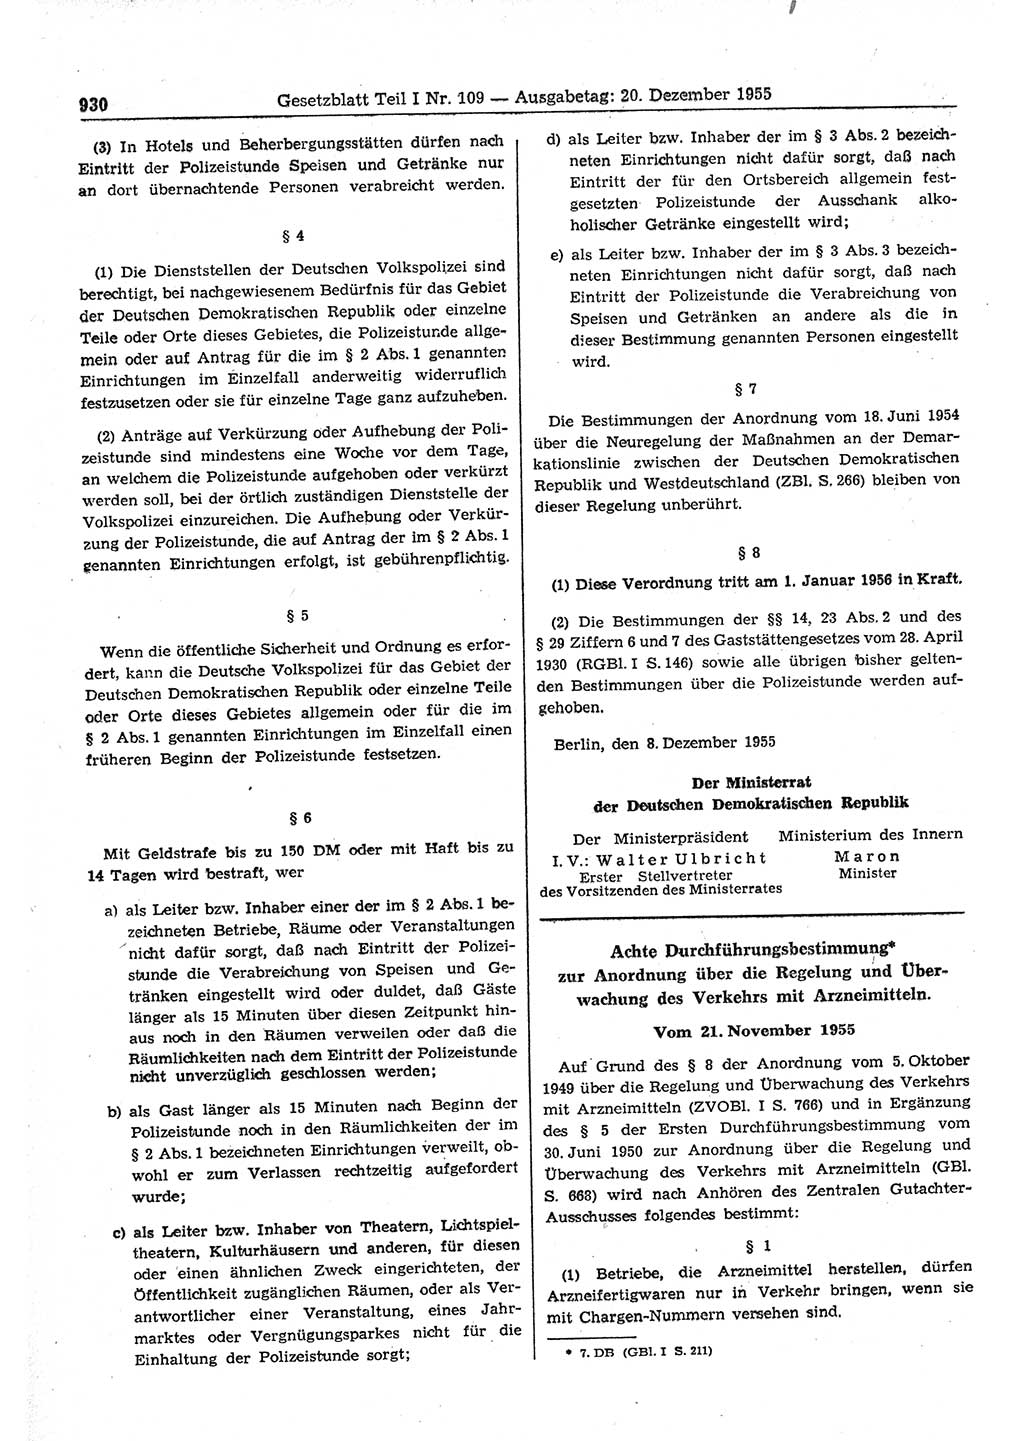 Gesetzblatt (GBl.) der Deutschen Demokratischen Republik (DDR) Teil Ⅰ 1955, Seite 930 (GBl. DDR Ⅰ 1955, S. 930)